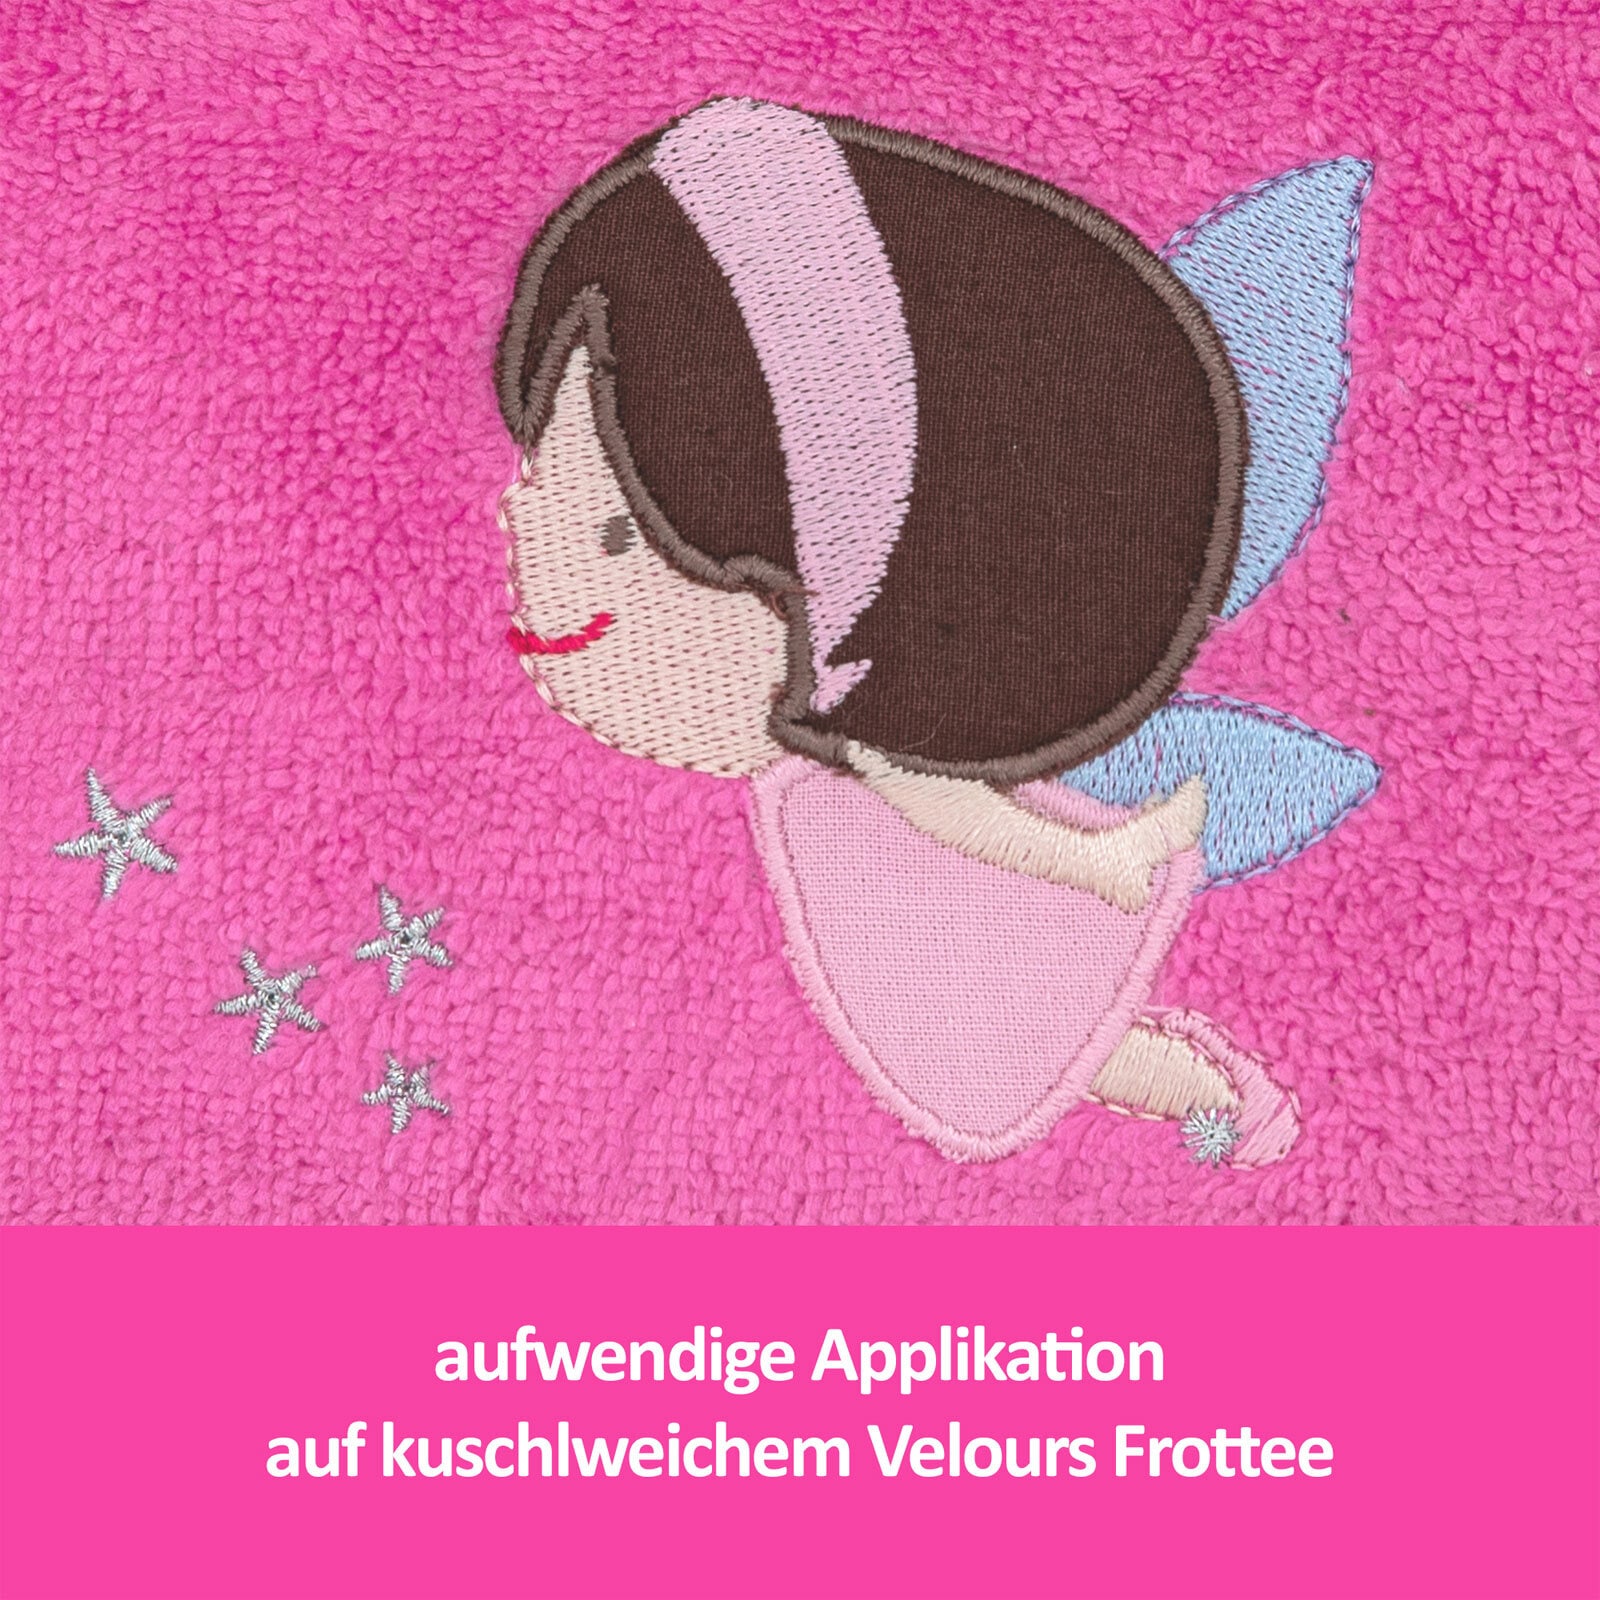 Smithy Waschbeutel ELFE 15 x 25 cm pink